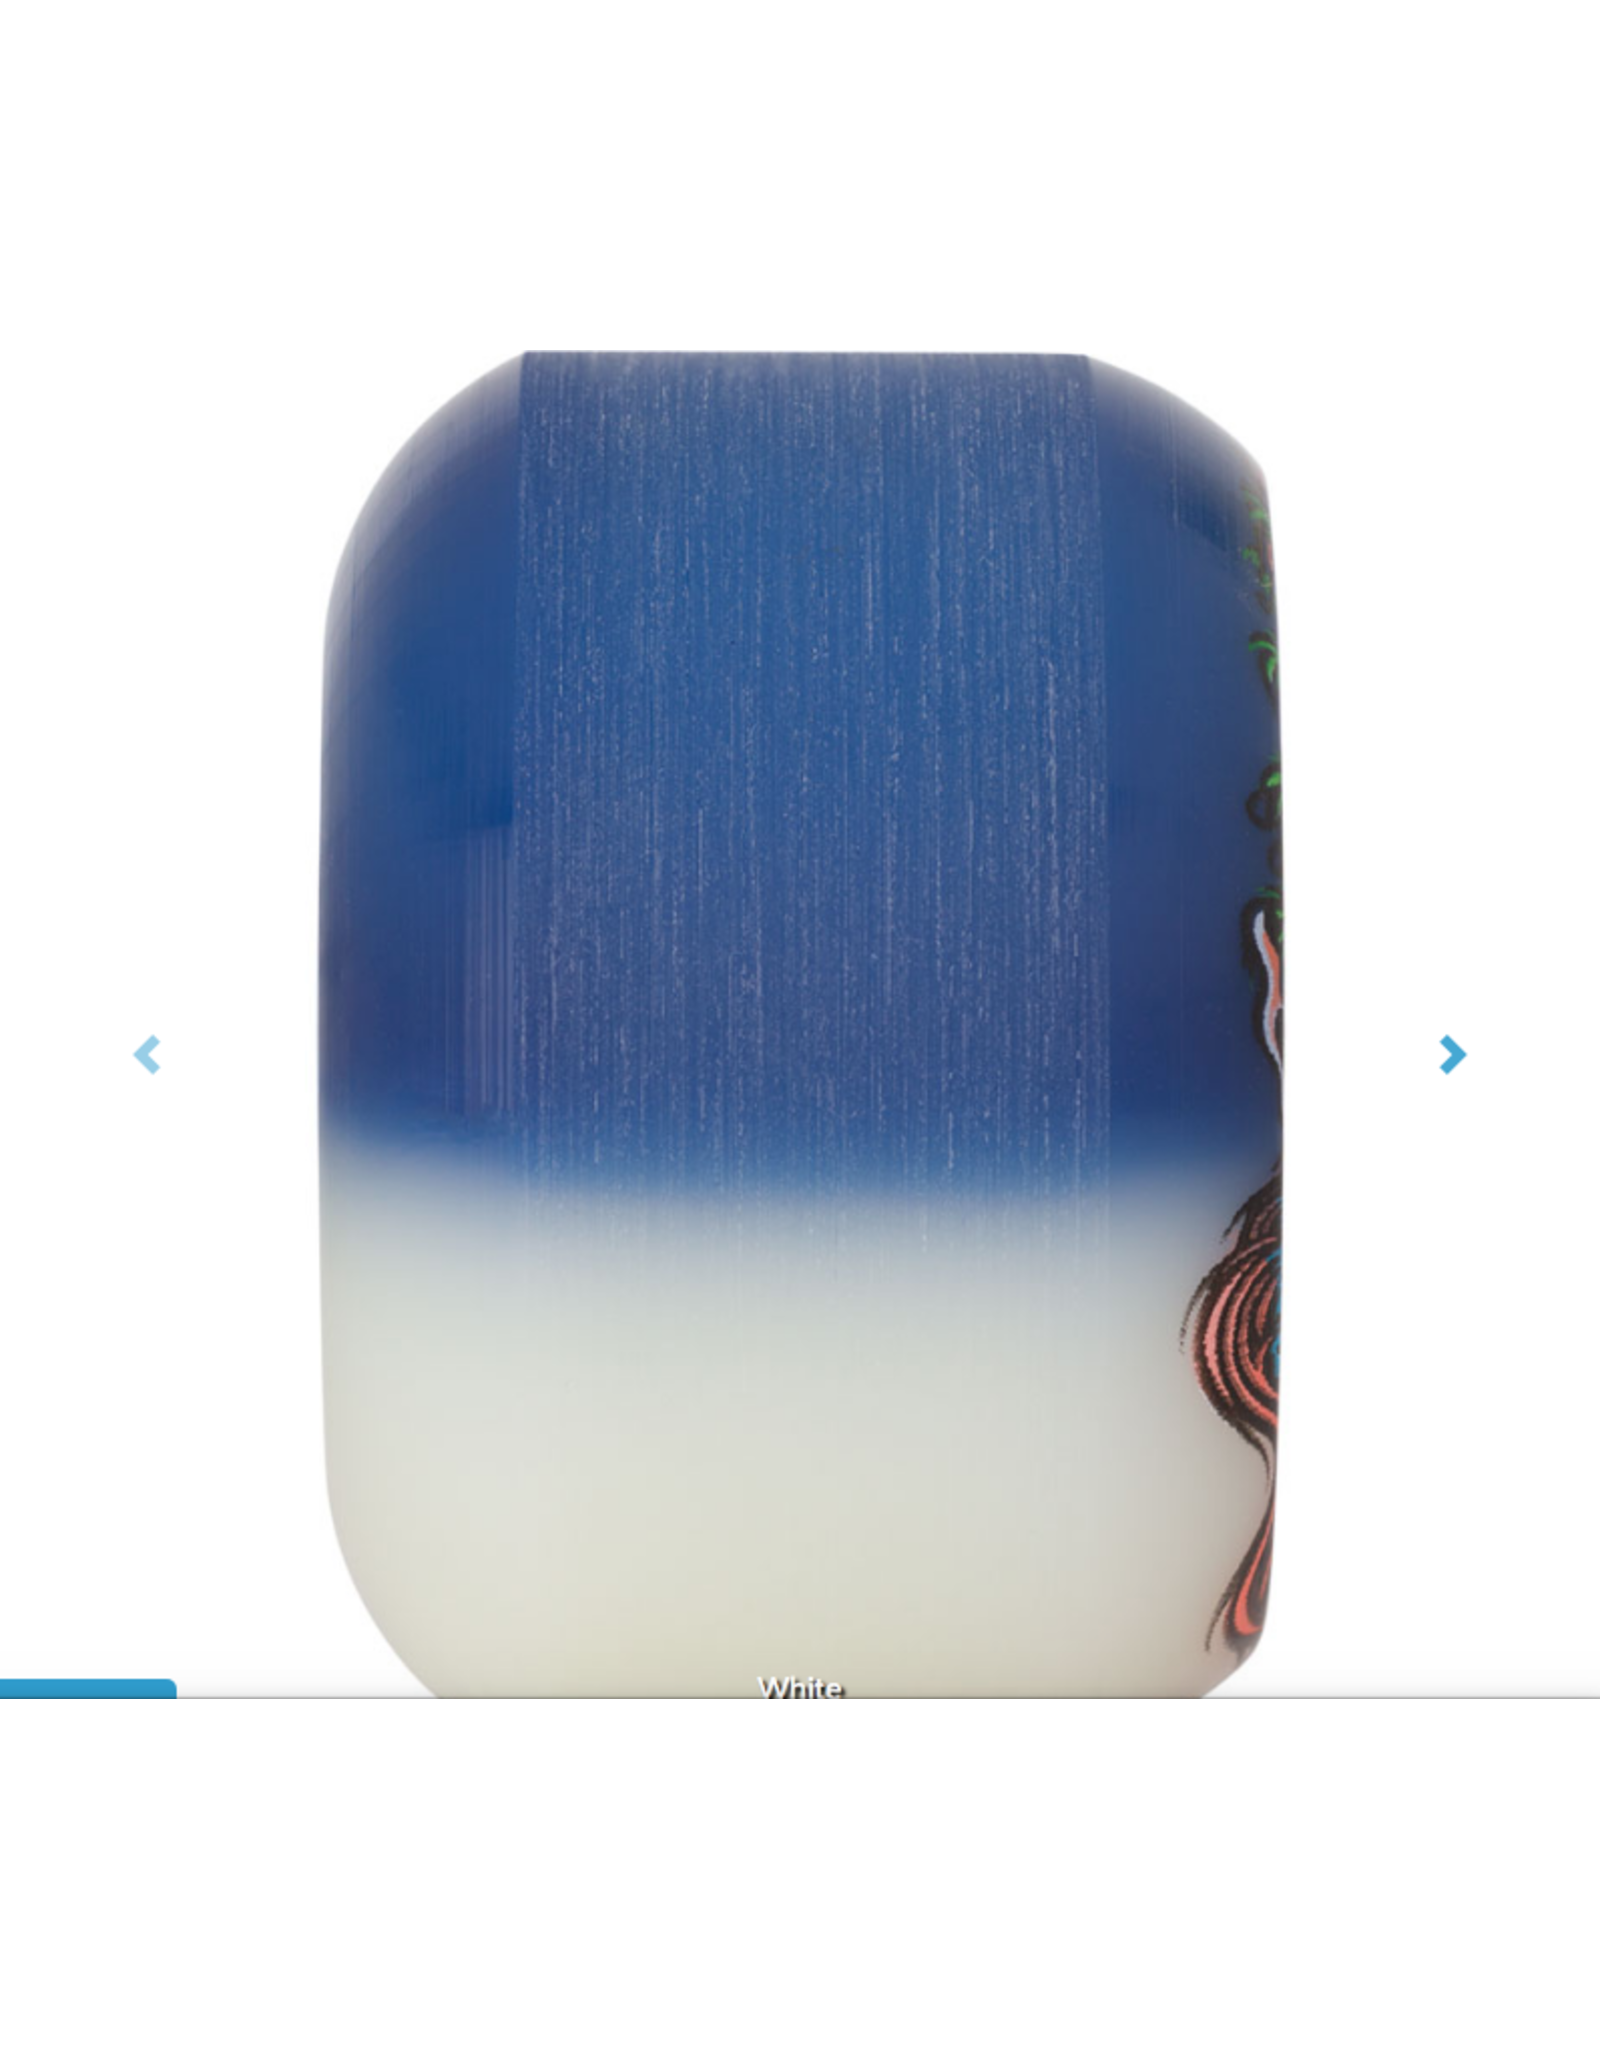 SLIMEBALLS 53mm Hairballs 50-50 White Blue 95a Slime Balls Skateboard Wheels SKU: #22222900